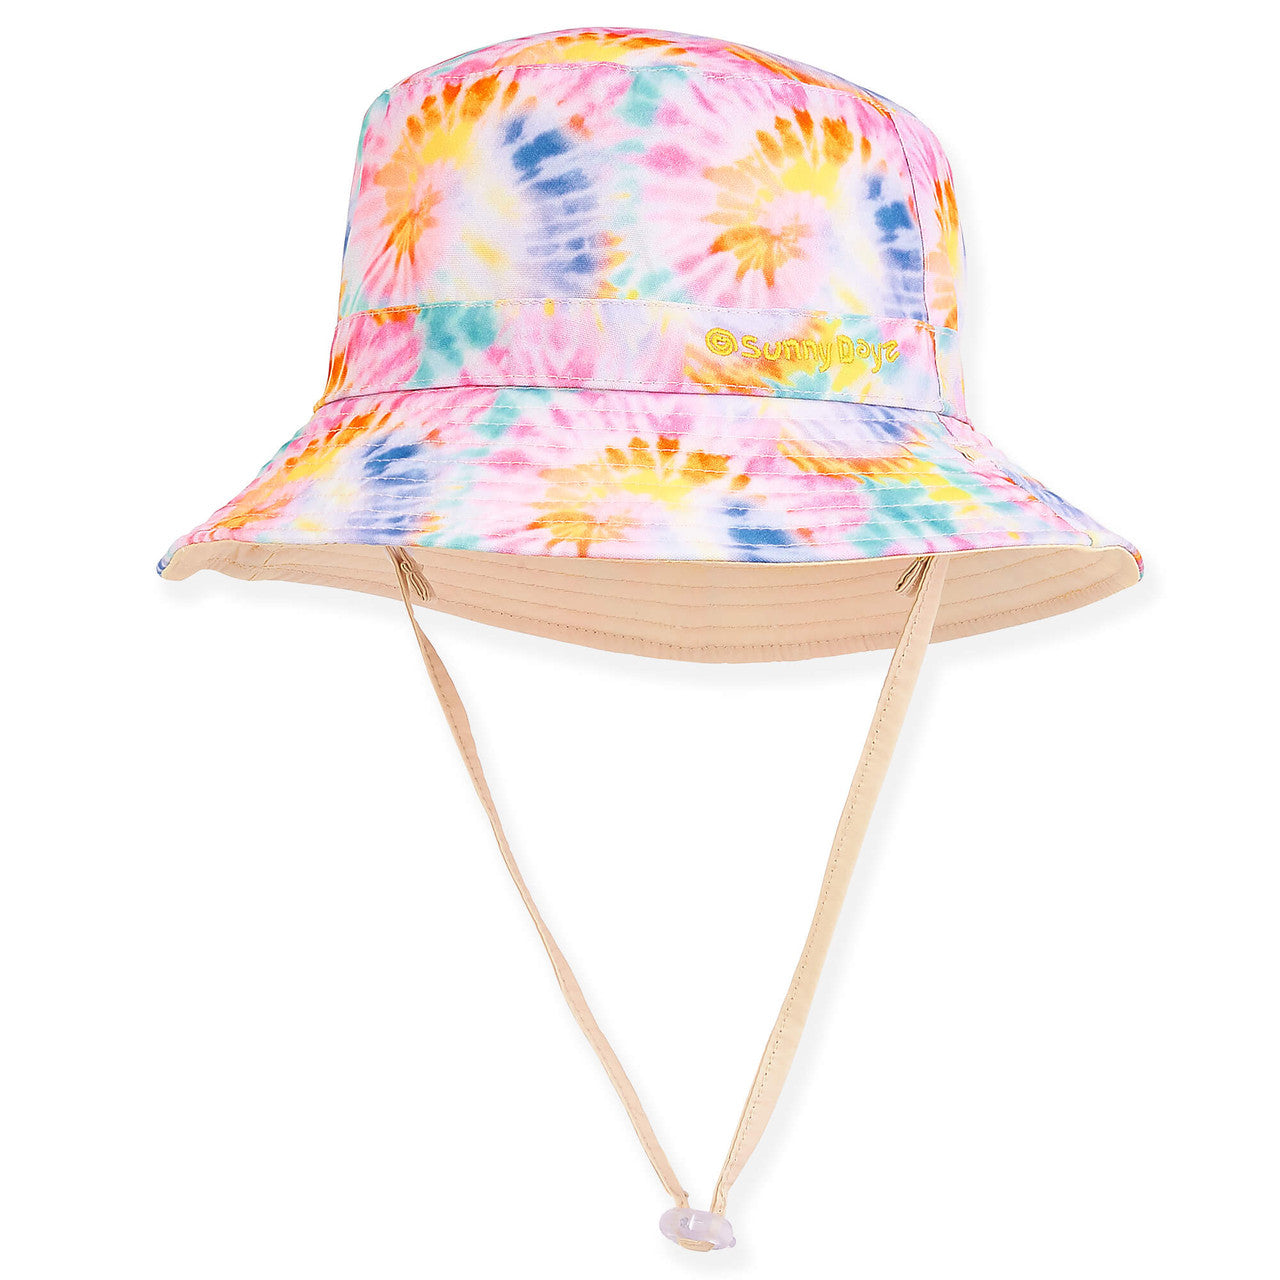 Small Heads Tie Dye Reversible Cotton Bucket Hat - Sunny Dayz™ Bucket Hat Sun N Sand Hats HK407A-L Beige Small (54.5 cm) 